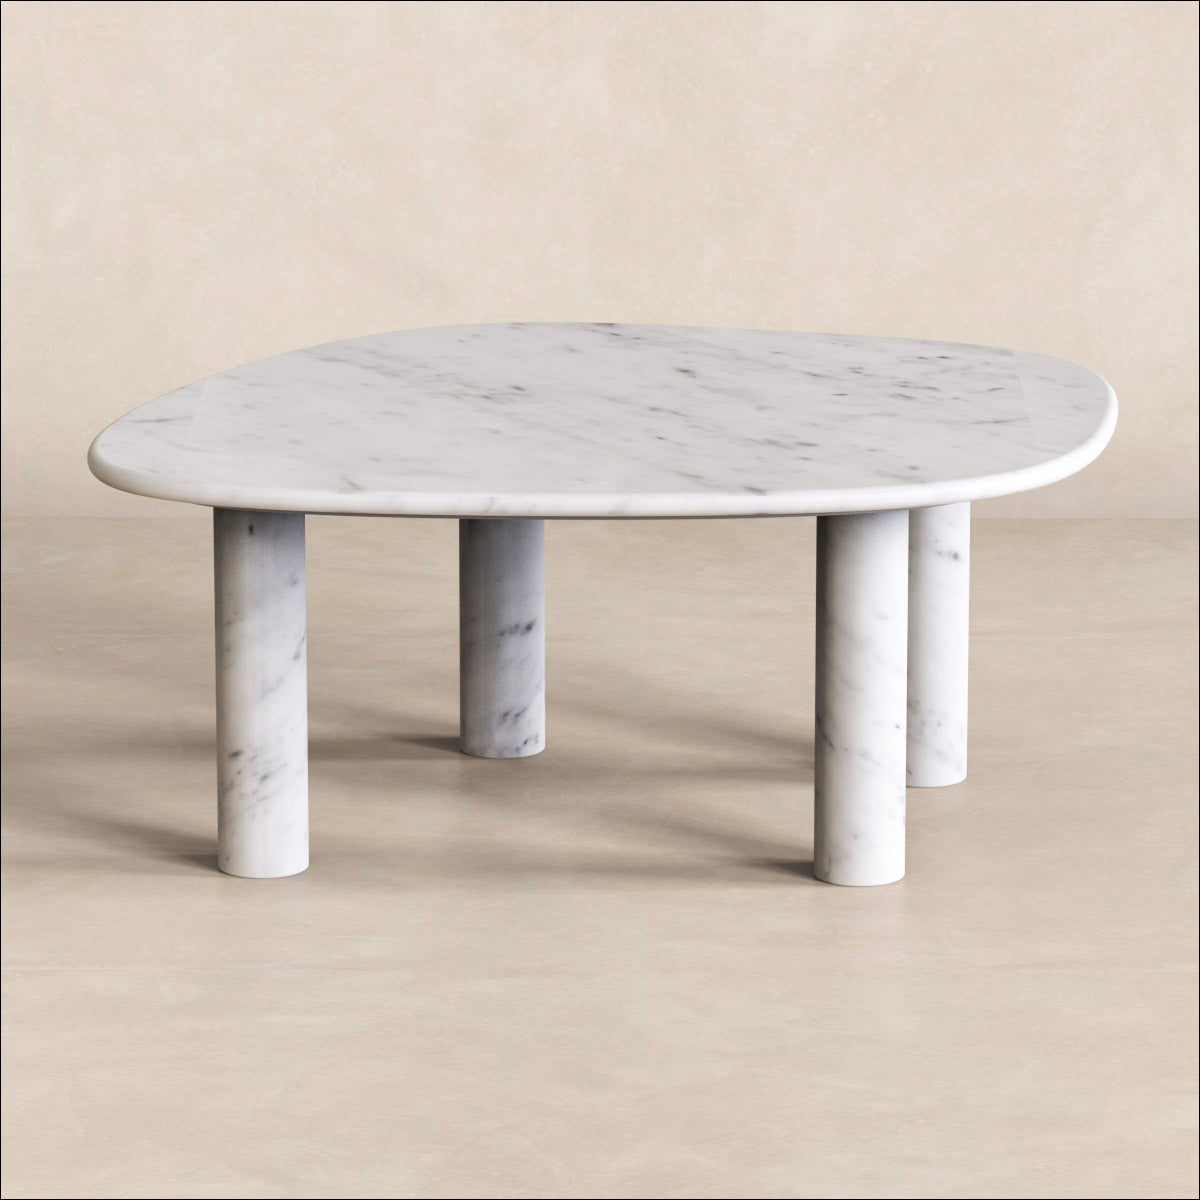 OIXDESIGN ZenPebble Coffee Table, Italian Carrara Marble, Micro Scene Graph, Front View